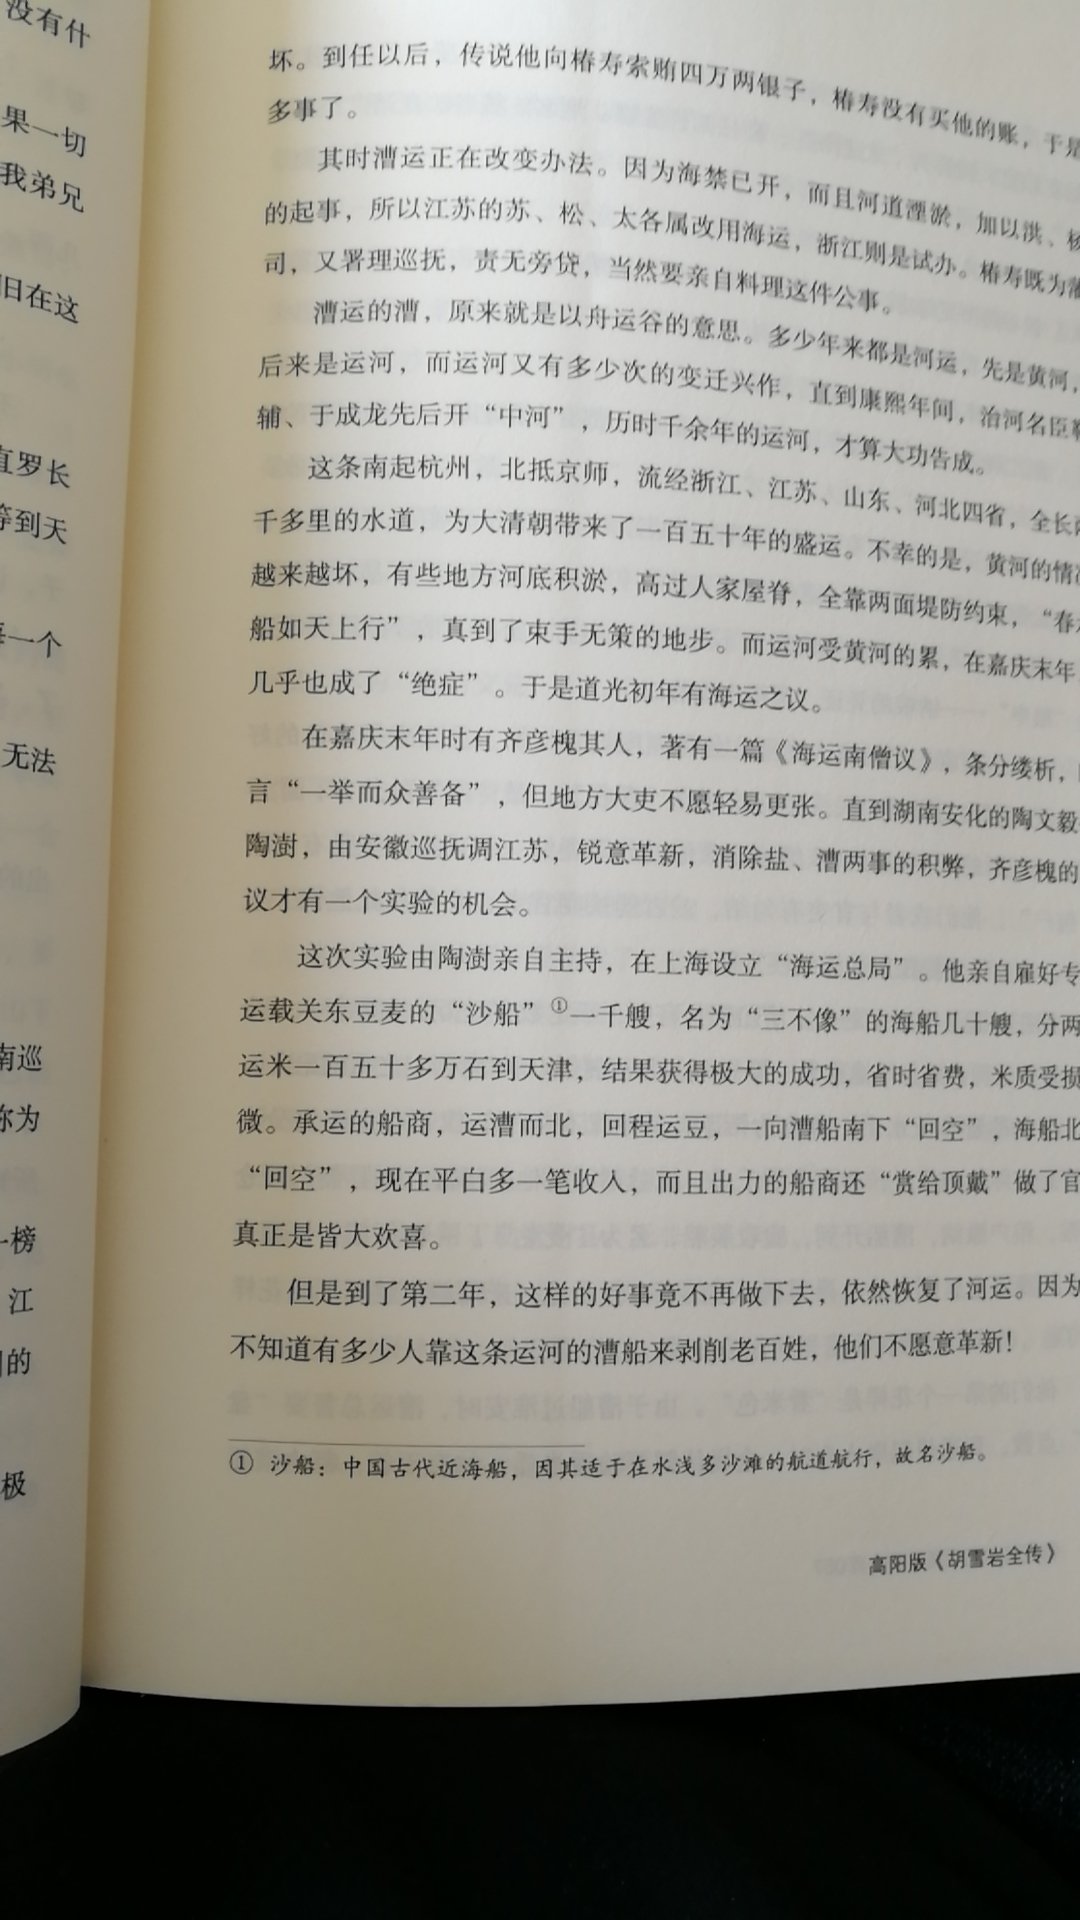 红顶商人传说的开始，官商的典范，中国式经商的榜样